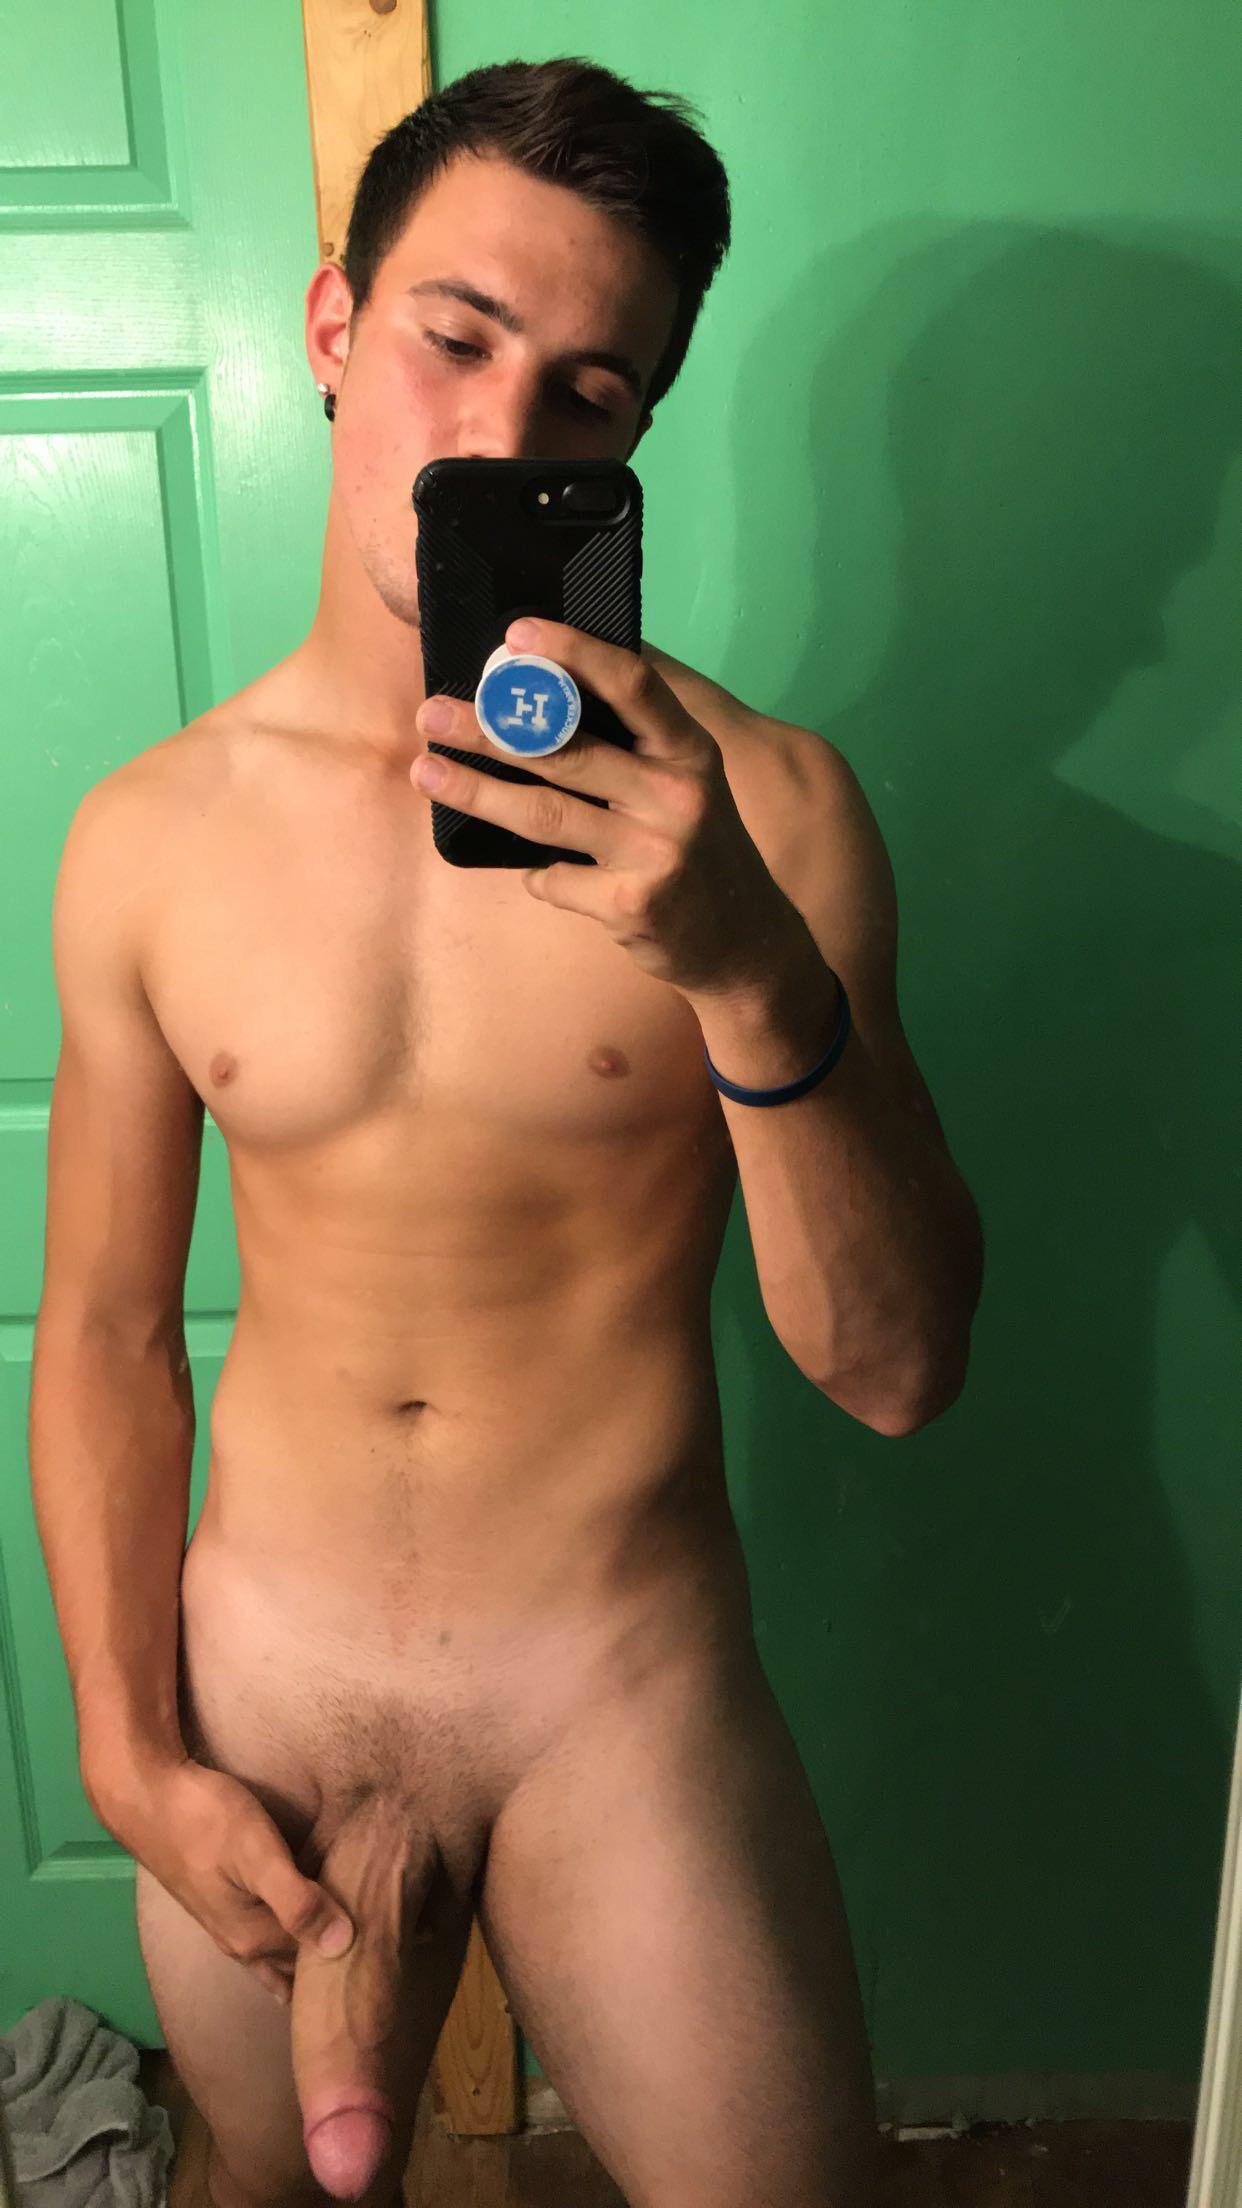 boner straight guy naked selfie